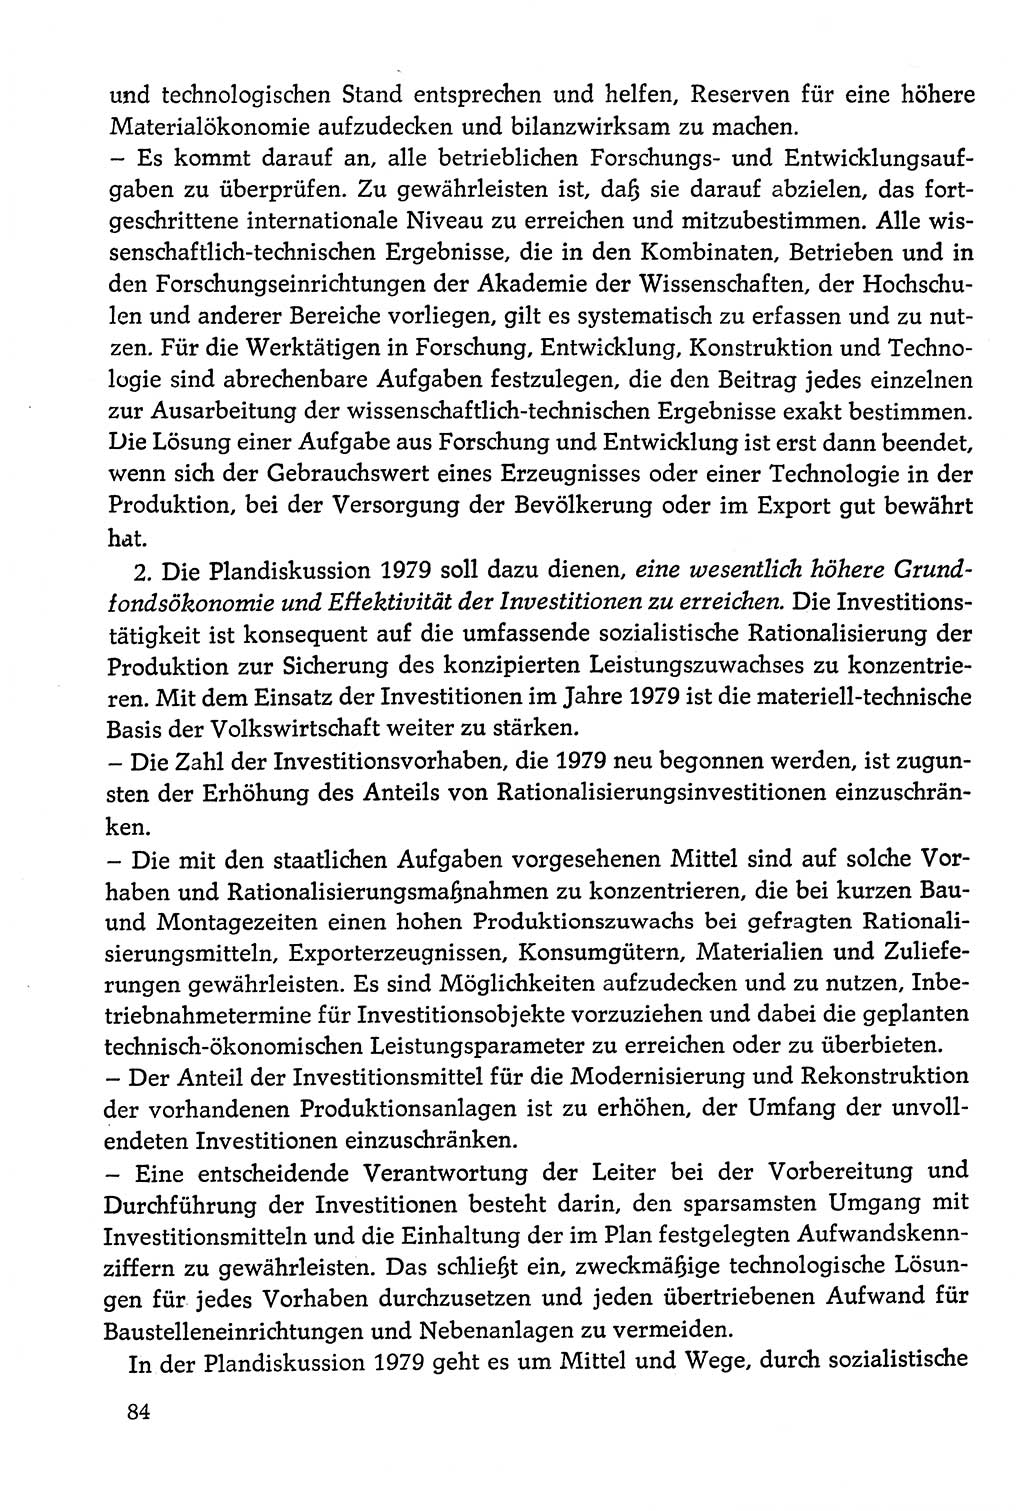 Dokumente der Sozialistischen Einheitspartei Deutschlands (SED) [Deutsche Demokratische Republik (DDR)] 1978-1979, Seite 84 (Dok. SED DDR 1978-1979, S. 84)